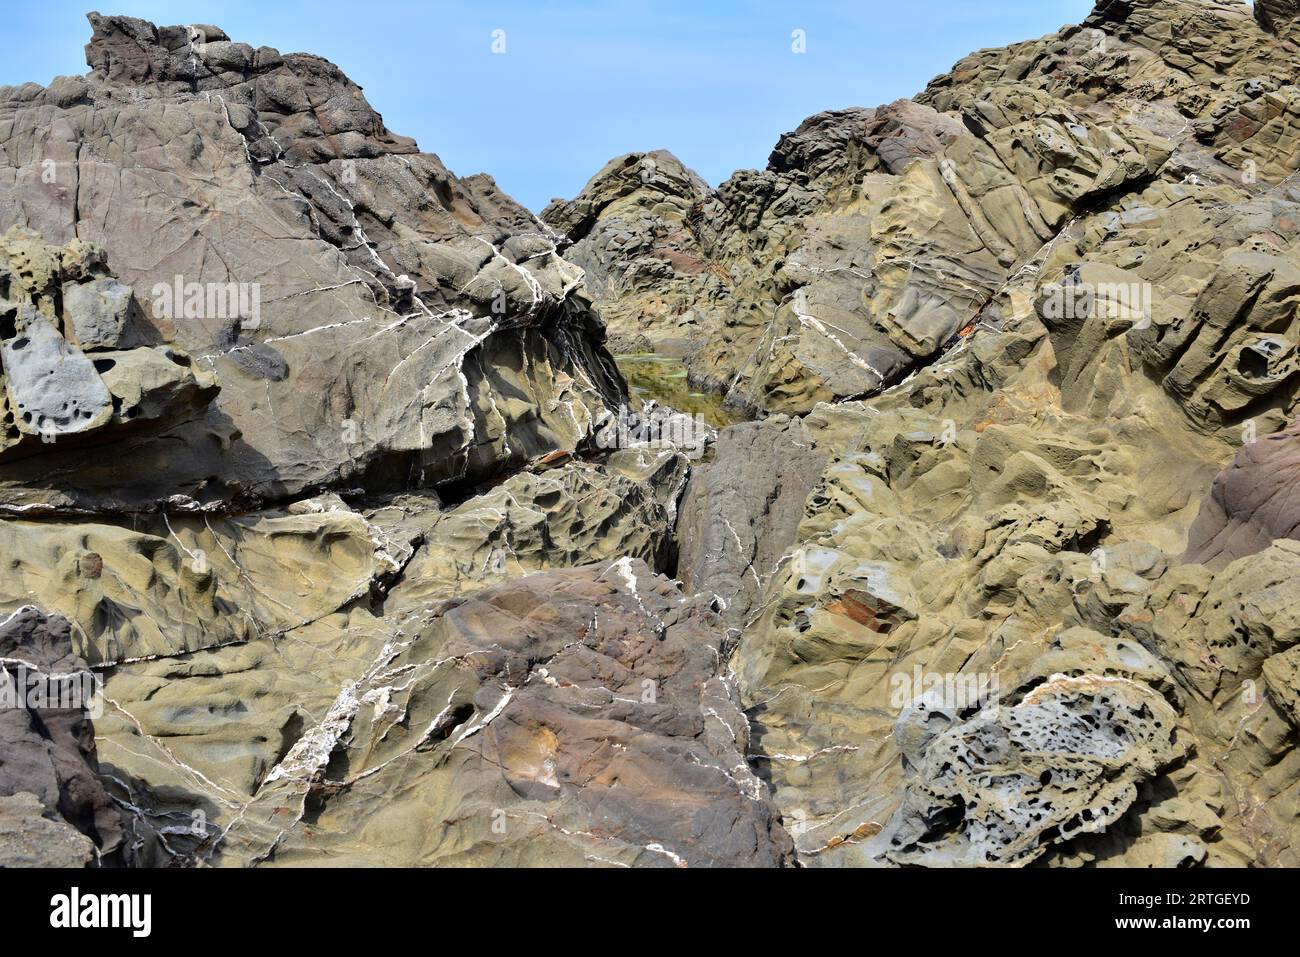 Arenaria e turbidite di carbonifero con vene di quarzo. Questa foto è stata scattata a Cap Favaritx, isola di Minorca, Isole Baleari, Spagna. Foto Stock